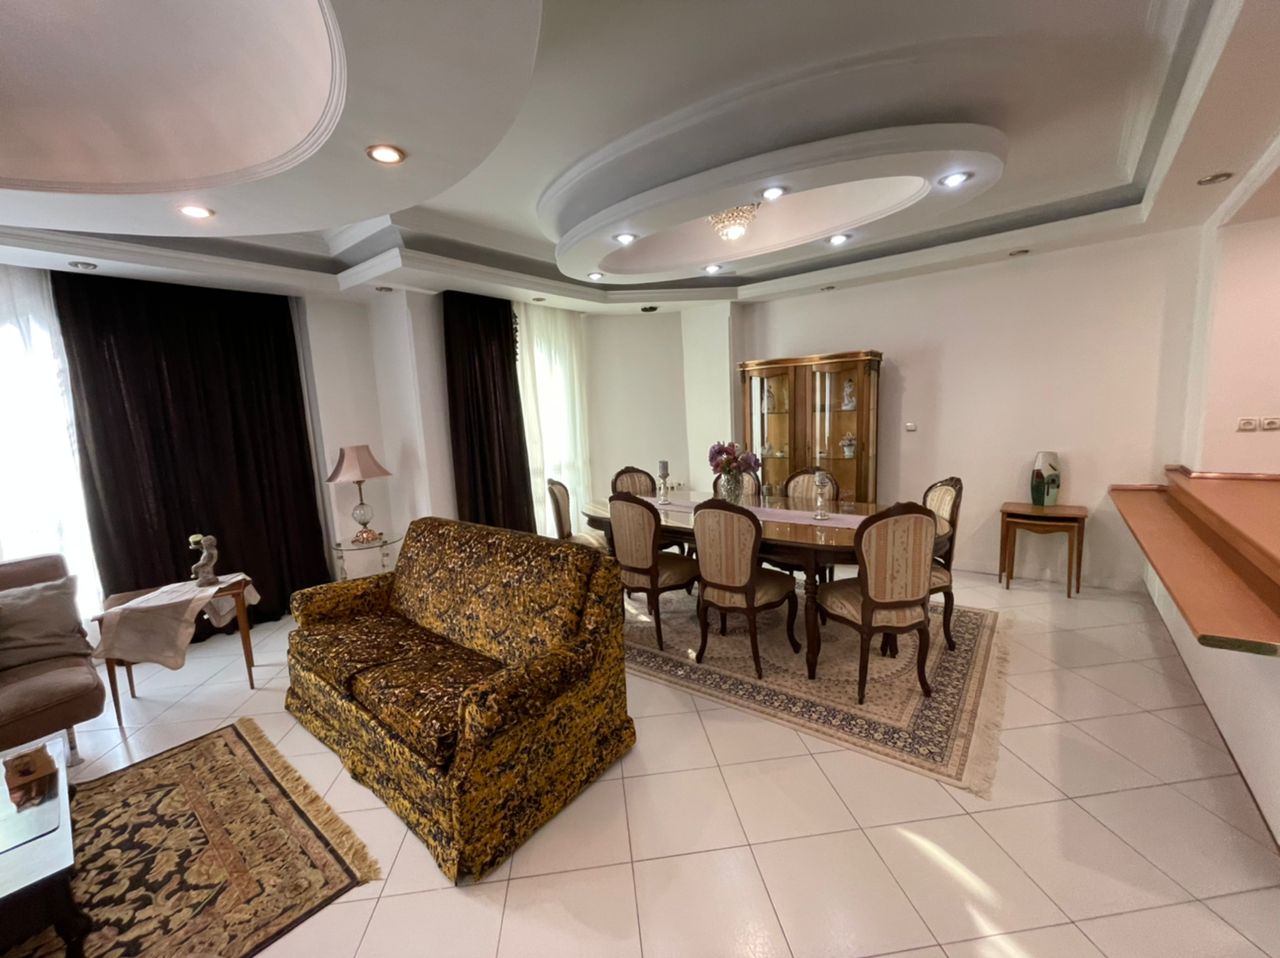 Rent Furnished Apartment In Tehran Jordan code 1265-1